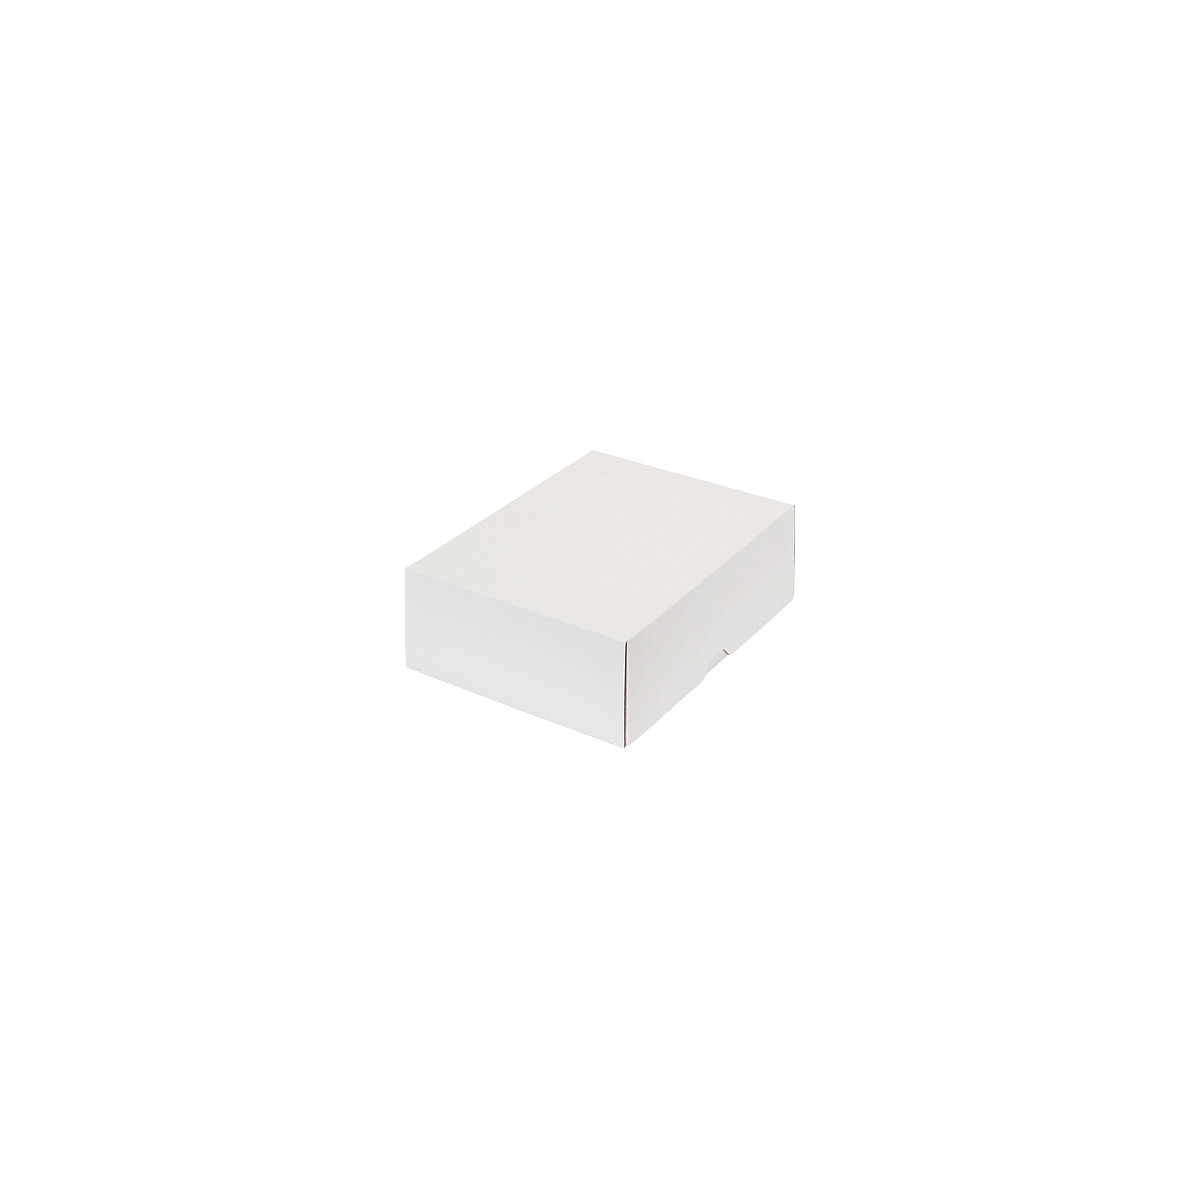 Stülpdeckelkarton, zweiteilig, Innenmaße 252 x 180 x 79 mm, B5, weiß, ab 150 Stk-13